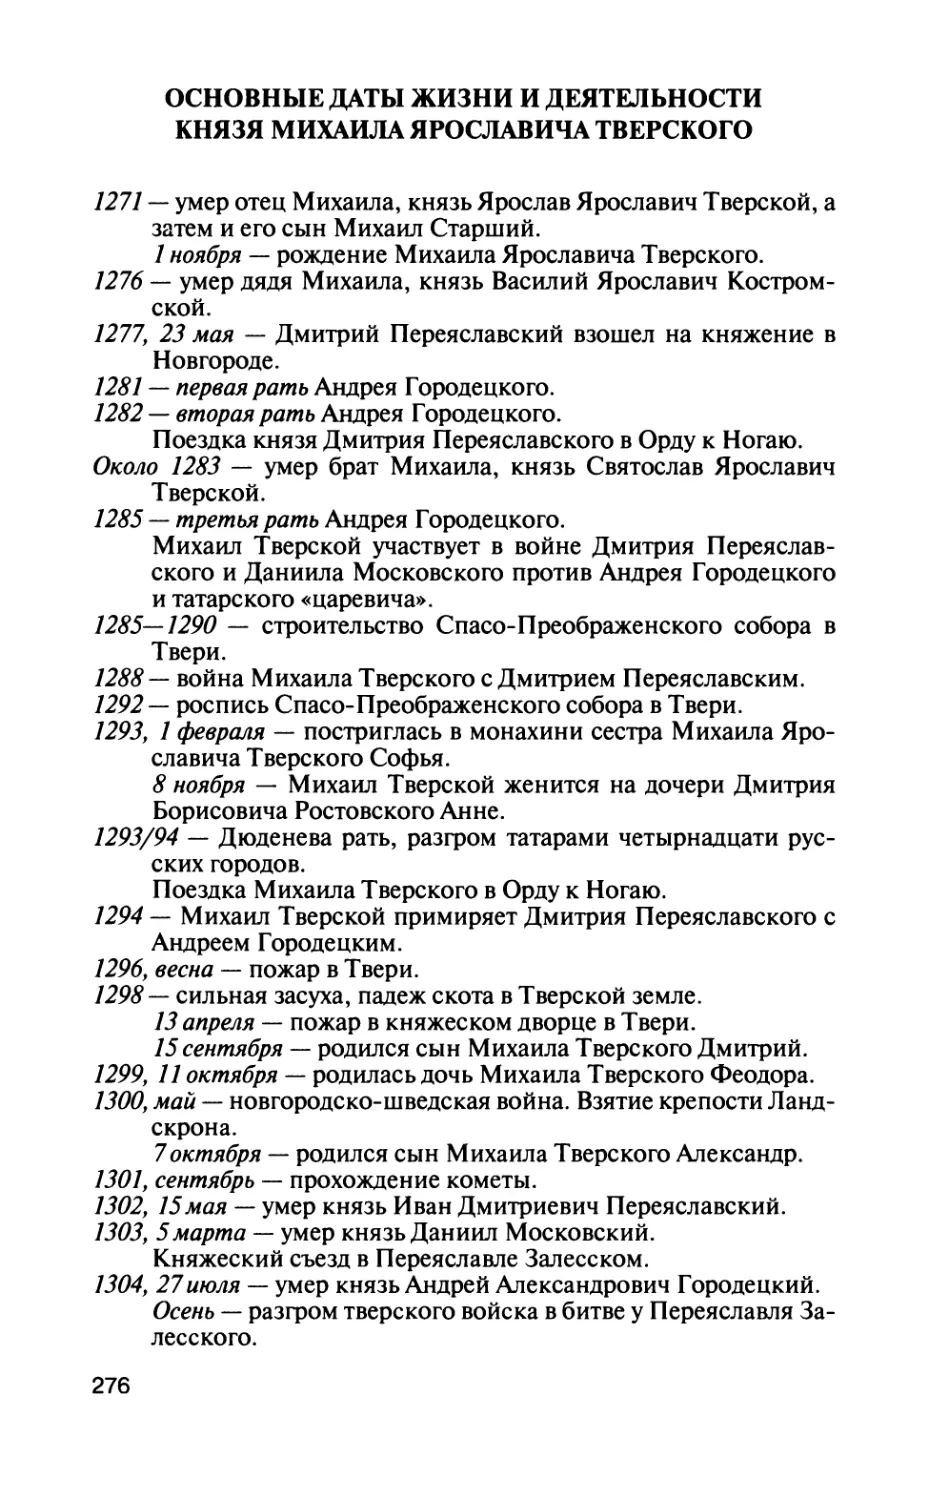 Основные даты жизни и деятельности князя Михаила Ярославича Тверского